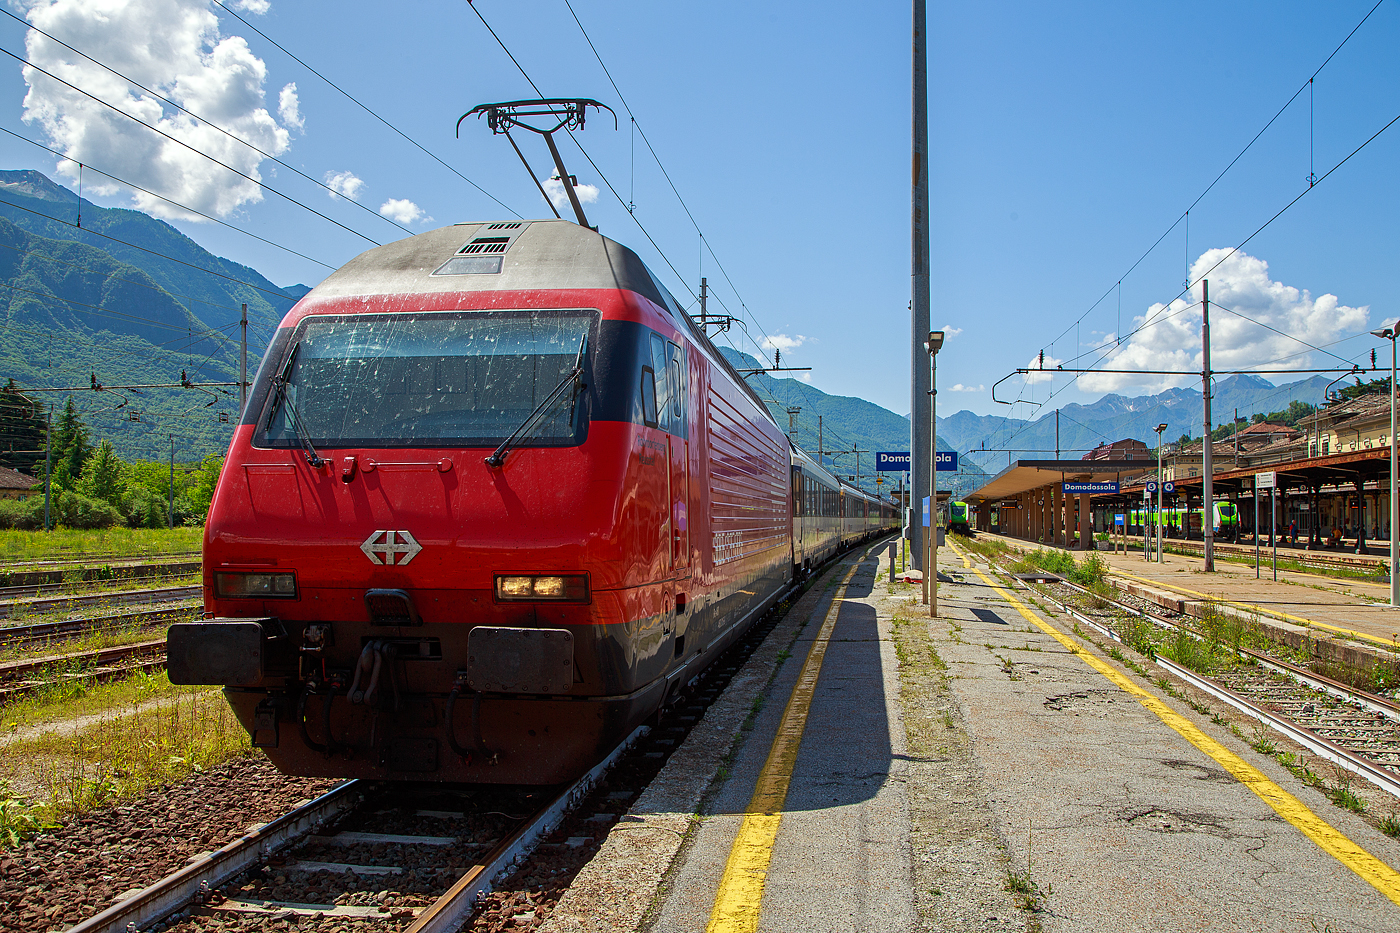 Die SBB Re 460 016-0  Rohrdorferberg Reusstal   (91 85 4 460 016-0 CH-SBB) hat am 26 Mai 2023 mit dem IR 3017 (Brig – Domodossola) den Zielbahnhof Domodossola (I) erreicht und ist nun mit dem Zug auf Gleis 6 abgestellt. Nach gut 2 ½ Stunden (um 13:48 Uhr) geht es dann als IR3022 von Domodossola zurück nach Brig.

Die Lok2000 wurde 1992 von der SLM (Schweizerischen Lokomotiv- und Maschinenfabrik in Winterthur) unter der Fabriknummer 5477 gebaut, der elektrische Teil ist von der ABB (Asea Brown Boveri). Sie war 2015 der 2. Prototyp der im SBB Werk Yverdon-les-Bains (VD) das vollständige Modernisierungs-/Refit-Programm LOK2000 durchlief. So sollen die Loks fit für die nächsten 20 Jahre sein, zudem werden durch alle 119 SBB Re 460 Lokomotiven so etwa 30 Gigawattstunden Energie eingespart.

Modernisierungs-/Refit-Programm der LOK2000 (Re 460):
Zwischen 2015 und November 2022 unterzog die SBB alle ihrer 119 Re 460 Lokomotiven (LOK2000) einem Refit-Programm (Modernisierung) im SBB Werk Yverdon-les-Bains (VD). Dabei wurden unter anderem die auf dem GTO-(Thyristor)-Halbleiter-Technologiestand der 1990er-Jahre basierende Leistungselektronik (GTO- Traktionsumrichter) durch IGBT-Traktionsumrichter (insulated-gate bipolar transistor) der neuesten Generation von ABB ersetzt, welche die Fahrmotoren mit Strom speisen und Bremsenergie zurückgewinnen. Die SBB hat damit, in Zusammenarbeit mit der ABB, die gesamte Flotte Re 460 modernisiert und hat diese auf den neuesten Stand der Antriebstechnik gebracht. Die gesamte Flotte spart dank neuen Traktionsumrichtern und weiteren technischen Optimierungen jedes Jahr rund 30 Gigawattstunden Energie ein, das sind fünf Gigawattstunden mehr als ursprünglich erwartet. Die Energieeinsparungen entsprechen dem durchschnittlichen Stromverbrauch von 10.000 Schweizer Haushalten. Die Umrüstung auf modernste IGBT-Technologie und mit Wasser statt Öl betriebene Kühlsysteme der Umrichter ermöglicht eine Senkung des Energieverbrauchs und sorgt für einen ökologischeren und sicheren Bahnbetrieb.

Geschichte und Beschreibung:
Die SBB bestellte im Zusammenhang mit den Projekten Bahn 2000 eine erste Serie von 12 Universal-Hochgeschwindigkeitslokomotiven, noch als Re 4/4VI – 10701 bis 10712 bestellt. Diese Bestellung wurde noch vor Beginn der Konstruktionsarbeiten auf 24 erhöht. Für den alpenquerenden Güterverkehr wurde von der Eidgenossenschaft eine weitere Serie von 75 Lokomotiven (auch als 'Hupac'-Lokomotiven bekannt) in Auftrag gegeben. Die vorgegebenen Liefertermine für dieses Los waren derart kurz, dass die SLM an die Kapazitätsgrenze ihrer Werkstätte gelangte. Es wurden deshalb dreißig Lokkasten an Krauss-Maffei in München untervergeben 

Im Hinblick auf die geplante Hochgeschwindigkeitsstrecke wurden nochmals zwanzig Lokomotiven nachbestellt, was die Serie auf 119 ansteigen ließ. Die im Volksmund Lok 2000 genannte Lokomotive hat eine Höchstgeschwindigkeit von 230 km/h und eine Leistung von 6,1 MW und ist für den Schnellzugs- wie Güterverkehr ausgelegt. Um die Gesamtmasse von 84 Tonnen nicht zu überschreiten musste ein gesickter Leichtbaukasten konstruiert werden, dessen Form vom Designstudio Pininfarina entworfen wurde.

Um auf den Strecken durch die Alpen den Radverschleiß gering zu halten, haben die Lokomotive radial einstellbare Achsen erhalten. Auch auf dem Gebiet der elektrischen Ausrüstung wurde Neuland beschritten. Zwei Ebenen Steuerelektronik für das Fahrzeug und den Antrieb sind eingebaut. Über das Fahrzeugleitgerät wurden zu viele Elemente gesteuert, wie Scheibenwischer oder Signalhorn. Dies führte anfänglich zu vielen Störungen und oft blieben Lokomotiven auf der Strecke liegen. Erst die Verbesserung der Programmierung erlaubte es die Zuverlässigkeit so zu erhöhen, dass es kaum mehr zu Ausfällen führte. Als Feststellbremse wurden in den Drehgestellen Permanentmagnetschienenbremsen eingebaut. Auch hier gab es am Anfang übermäßig viele Störungen und die Lokomotiven klebten regelmäßig an den Schienen fest.

Um den Schiebedienst auf den Gebirgsstrecken weniger personalaufwendig durchzuführen, wurden mehrere Lokomotiven mit einer amerikanischen Funkfernsteuerung ausgerüstet und als Ref 460 bezeichnet. Damit konnte von der Zugspitze aus eine am Zugschluss eingesetzte Lokomotive ferngesteuert werden. Die Divisionalisierung der SBB erlaubte es nicht mehr groß davon zu profitieren, denn alle Lokomotiven wurden dem Personenverkehr zugeteilt und der Einsatz vor Güterzügen war somit beendet.

Die Re 460 blieb nicht ein Einzelstück und entwickelte sich zu einer Lokomotivfamilie. Eine erste Bestellung wurde von der BLS für acht Lokomotiven gemacht. Die BLS Re 465 hat im Gegensatz zur Re 460 vier statt zwei Stromrichter. Jeder Motor hat dadurch seine eigene Regelung um die Eigenschaften im Bergeinsatz zu verbessern. Weiter können die BLS-Lokomotiven mit allen gängigen Schweizer Lokomotiven in Vielfachsteuerung verkehren. Das erlaubte es bei der BLS den Lokomotiveinsatz flexibler zu gestalten. Die SBB bestellte ebenfalls zehn Re 465, die bei Ablieferung schon das blaue BLS-Design hatten, aber erst später von der BLS übernommen wurden. Nach Finnland konnten auch in zwei Serien Lok 2000 verkauft werden. Dort sind sie als Sr2 bezeichnet. Nach Versuchsfahrten in Norwegen im schwierigen Winterdienst bestellten die NSB die fast baugleichen Lokomotive EL18 2241 bis 2262. Eine letzte Lieferung umfasst zwei Lokomotiven für Hongkong. Sie werden an jedem Ende eines Doppelstockzuges eingesetzt. Dies sind die letzten von SLM in Winterthur gebauten Fahrzeuge. Die Re 460 ist bis auf weiteres die letzte Vollbahn-Streckenlokomotive, die komplett von schweizerischen Unternehmen konstruiert und gebaut wurde. Der Lokomotivbau in der Schweiz wurde inzwischen aus wirtschaftlichen Gründen eingestellt. Einzig Stadler Rail stellt in der Schweiz noch Lokomotiven für den Rangier- und für den Zahnradbetrieb her.

TECHNISCHE DATEN der Re 460:
Nummerierung:  Re 460 000–118
Anzahl: 119
Baujahre: 1991–1996
Hersteller: SLM - Winterthur / ABB (Asea Brown Boveri)
Design: Pininfarina
Hersteller Lokkasten: teilweise (30 Stück) Krauss-Maffei (München)
Spurweite: 1.435 mm (Normalspur)
Achsformel: Bo'Bo'
Länge über Puffer: 18.500 mm
Höhe: 4.300 mm
Breite: 3.000 mm
Drehzapfenabstand: 11.000 mm
Achsabstand im Drehgestell:  2.800 mm
Laufraddurchmesser: 1.110 mm (neu)
Dienstgewicht: 84,0 t
Höchstgeschwindigkeit:  200 km/h (zugelassen)  / 230 km/h (Techn. möglich) 
Stundenleistung: 6.100 kW / 8.300 PS
Dauerleistung: 4.800 kW / 6.000 PS
Anfahrzugkraft: 300 kN
Dauerzugkraft: 275kN
Stromsystem: 15 kV, 16,7 Hz (über Oberleitung)